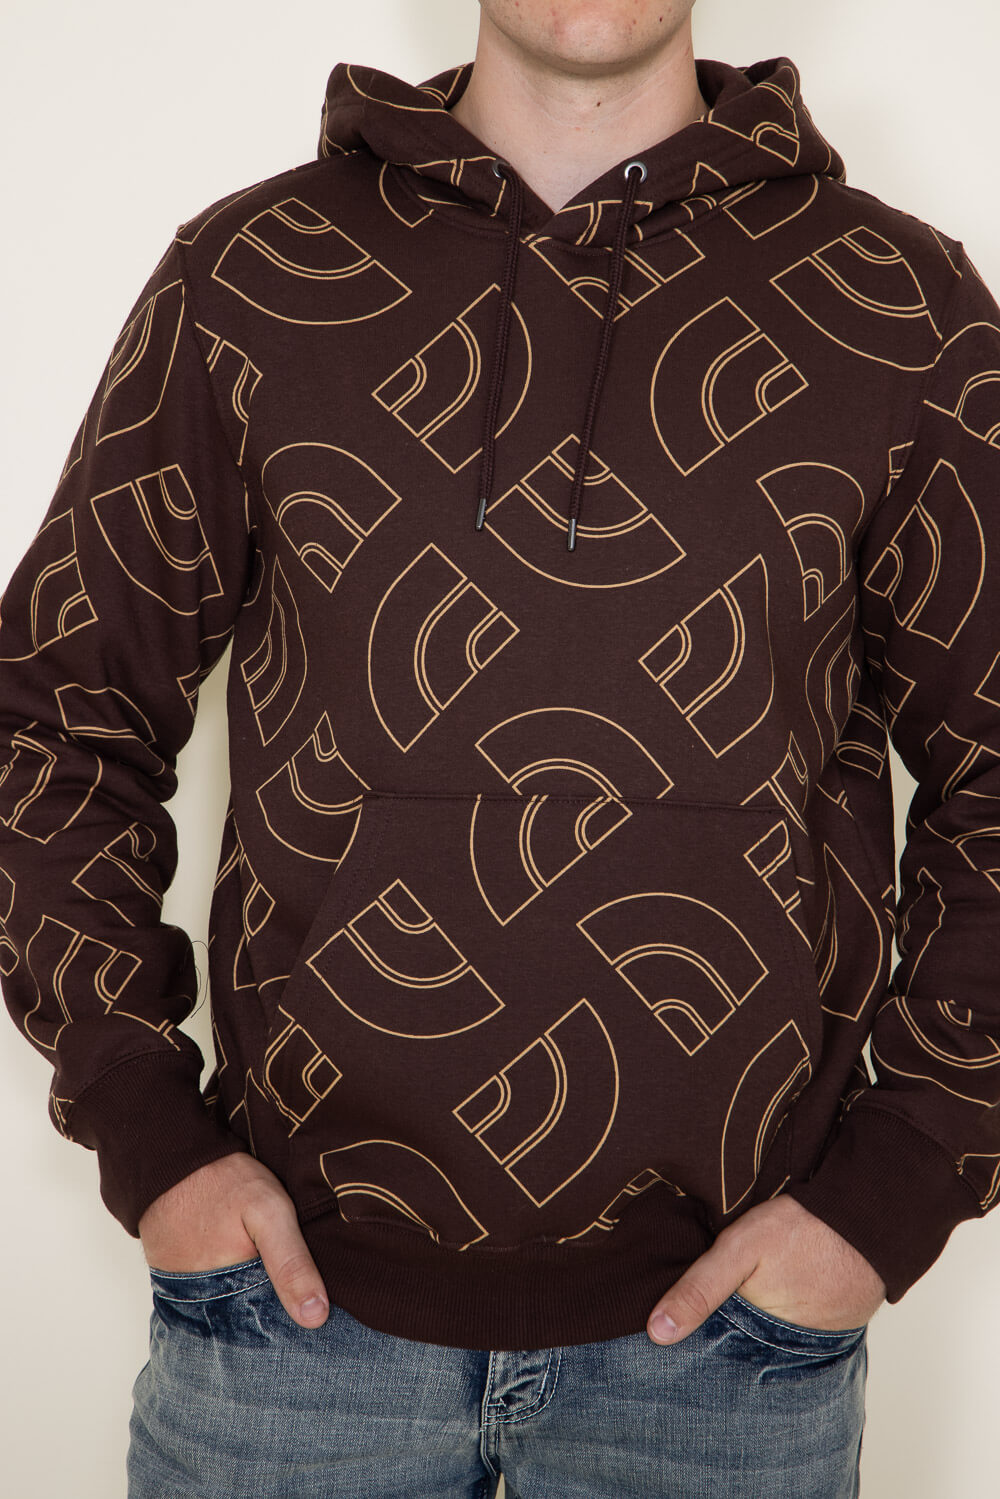 brown monogram hoodie